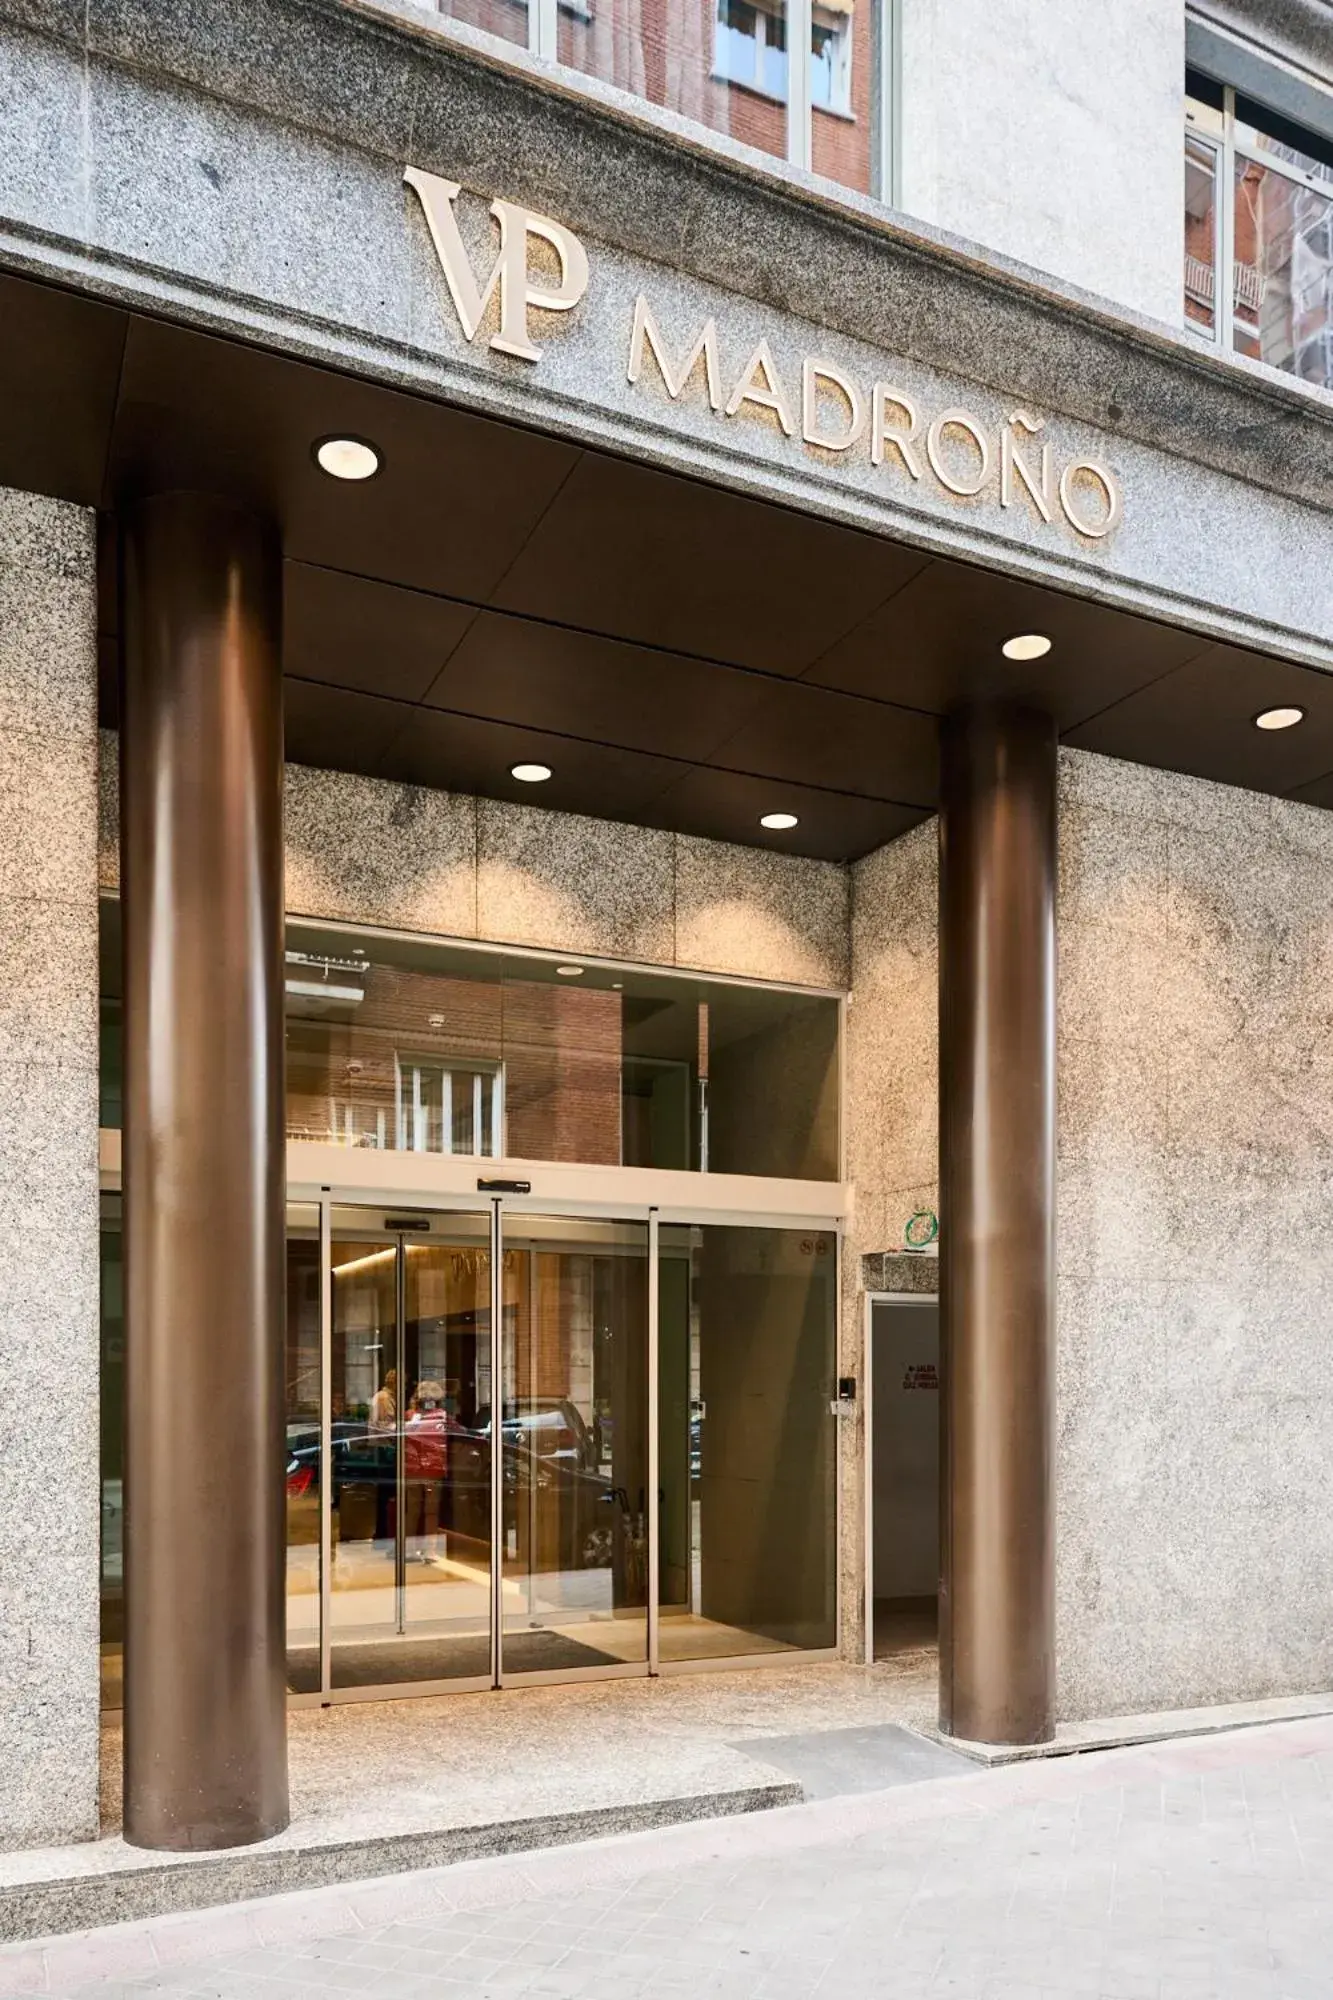 Facade/entrance in VP El Madroño